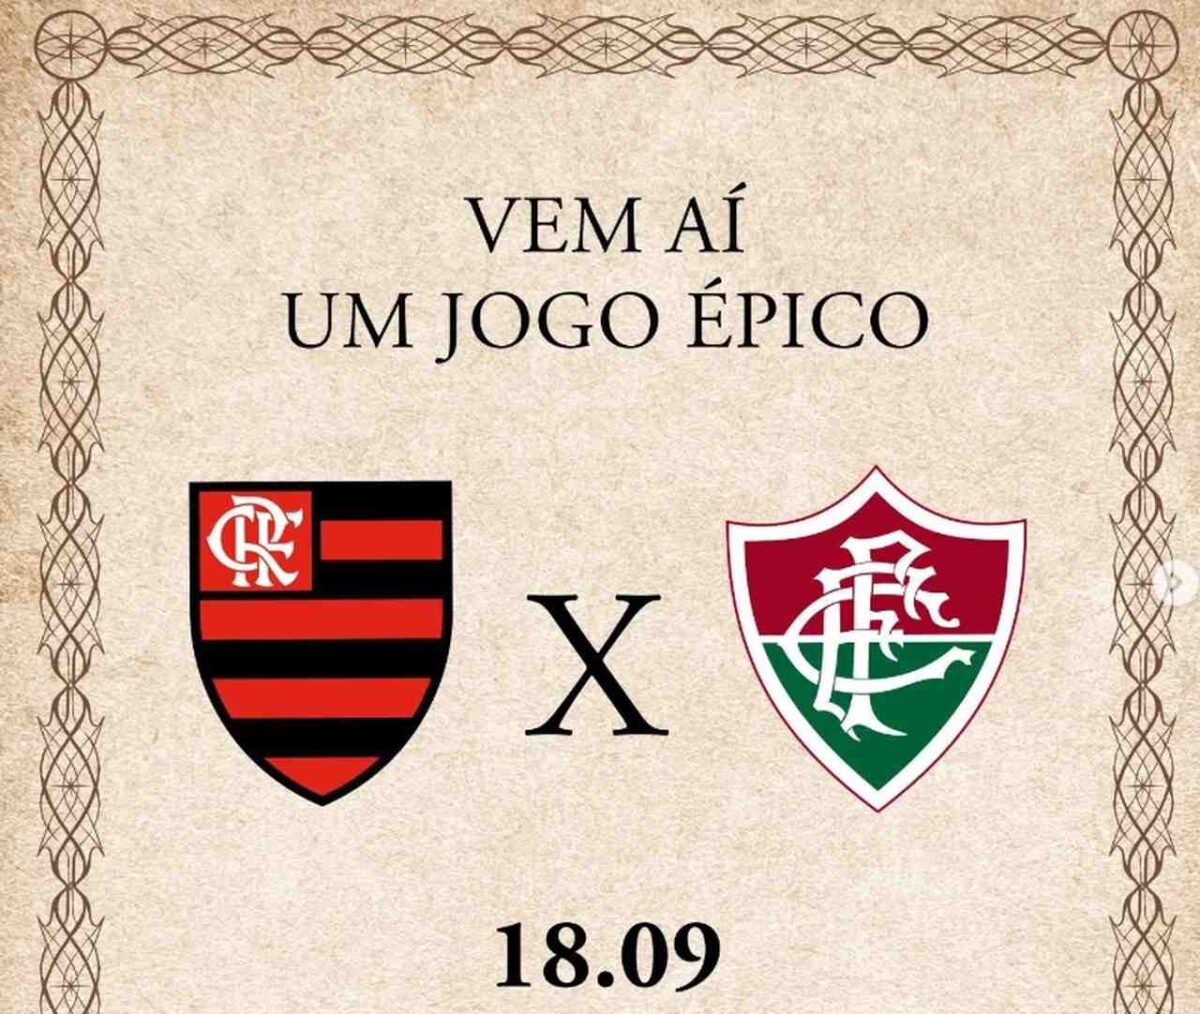 “O Senhor dos Anéis: Os Anéis de Poder” une perfis de Flamengo e Fluminense